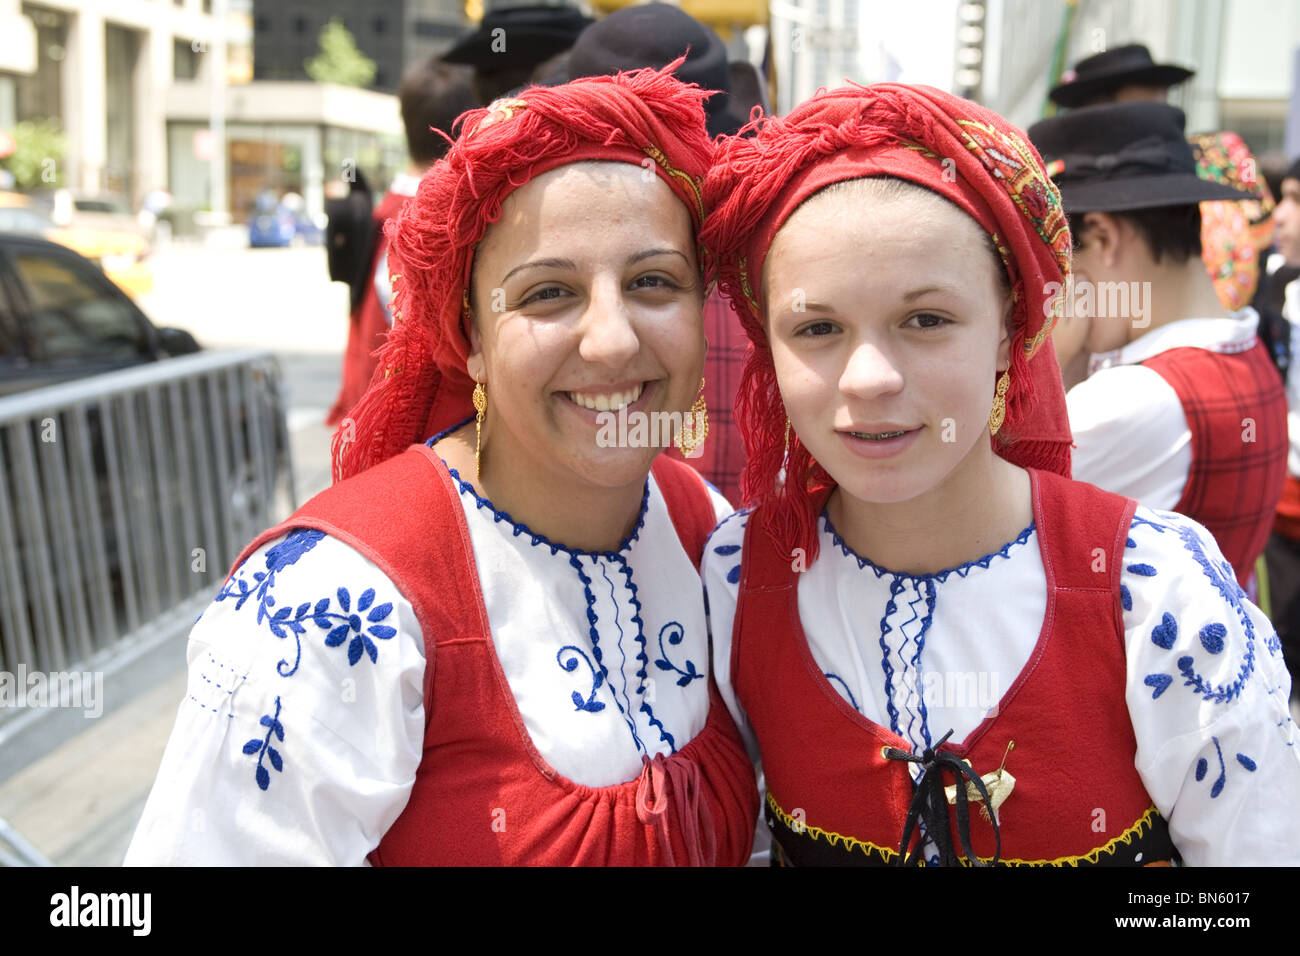 Internationalen Einwanderer Parade, New York: Mutter und Tochter in Folk Kleid Vertretung der portugiesischen Gemeinschaft in New York. Stockfoto